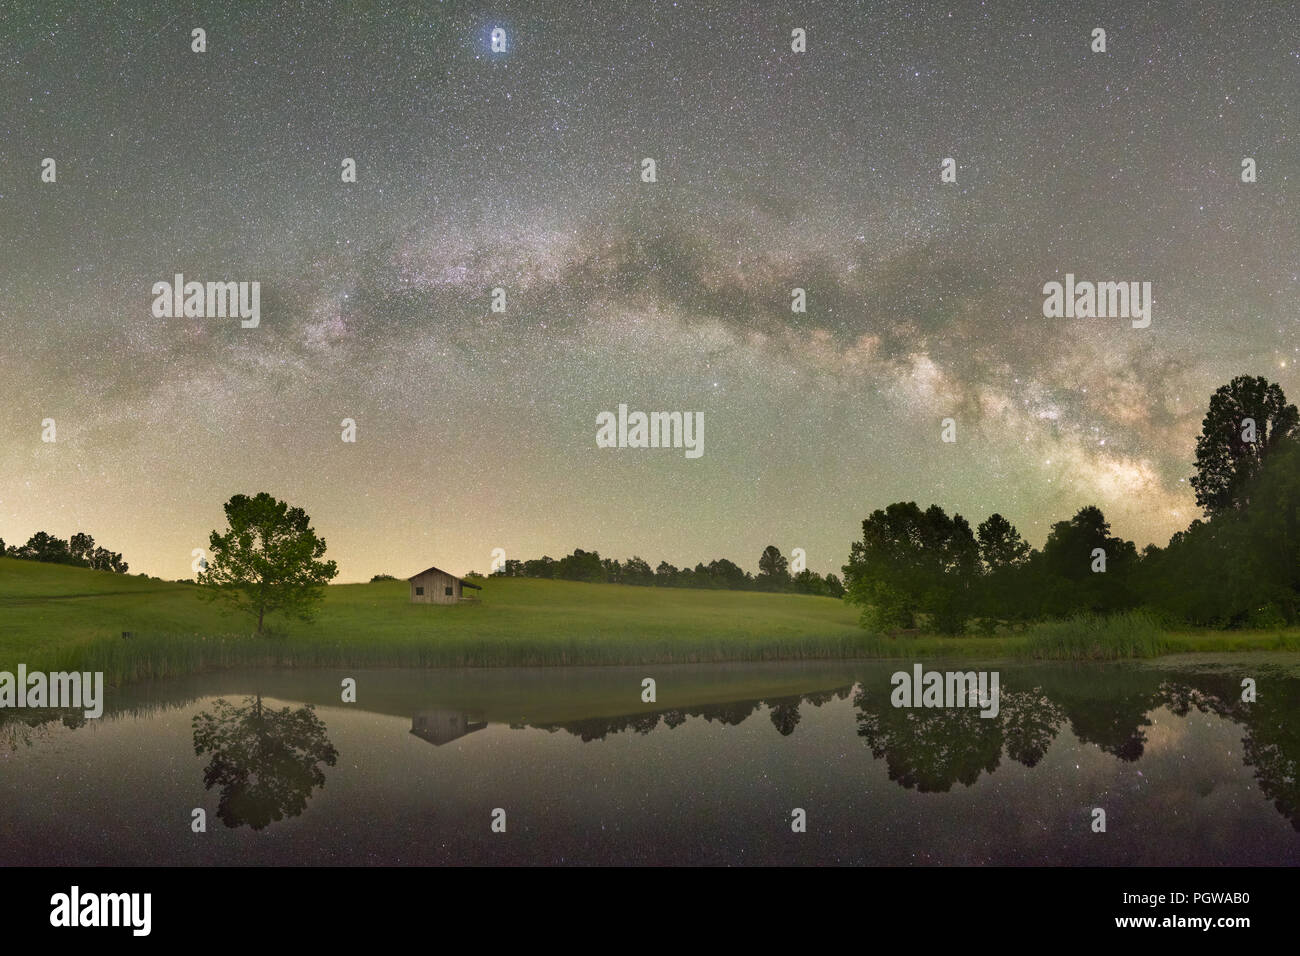 La longitud total de la Vía Láctea atraviesa la campiña de colinas y un viejo cobertizo, reflejado en un pequeño estanque por debajo de los cielos oscuros de West Virginia. Foto de stock